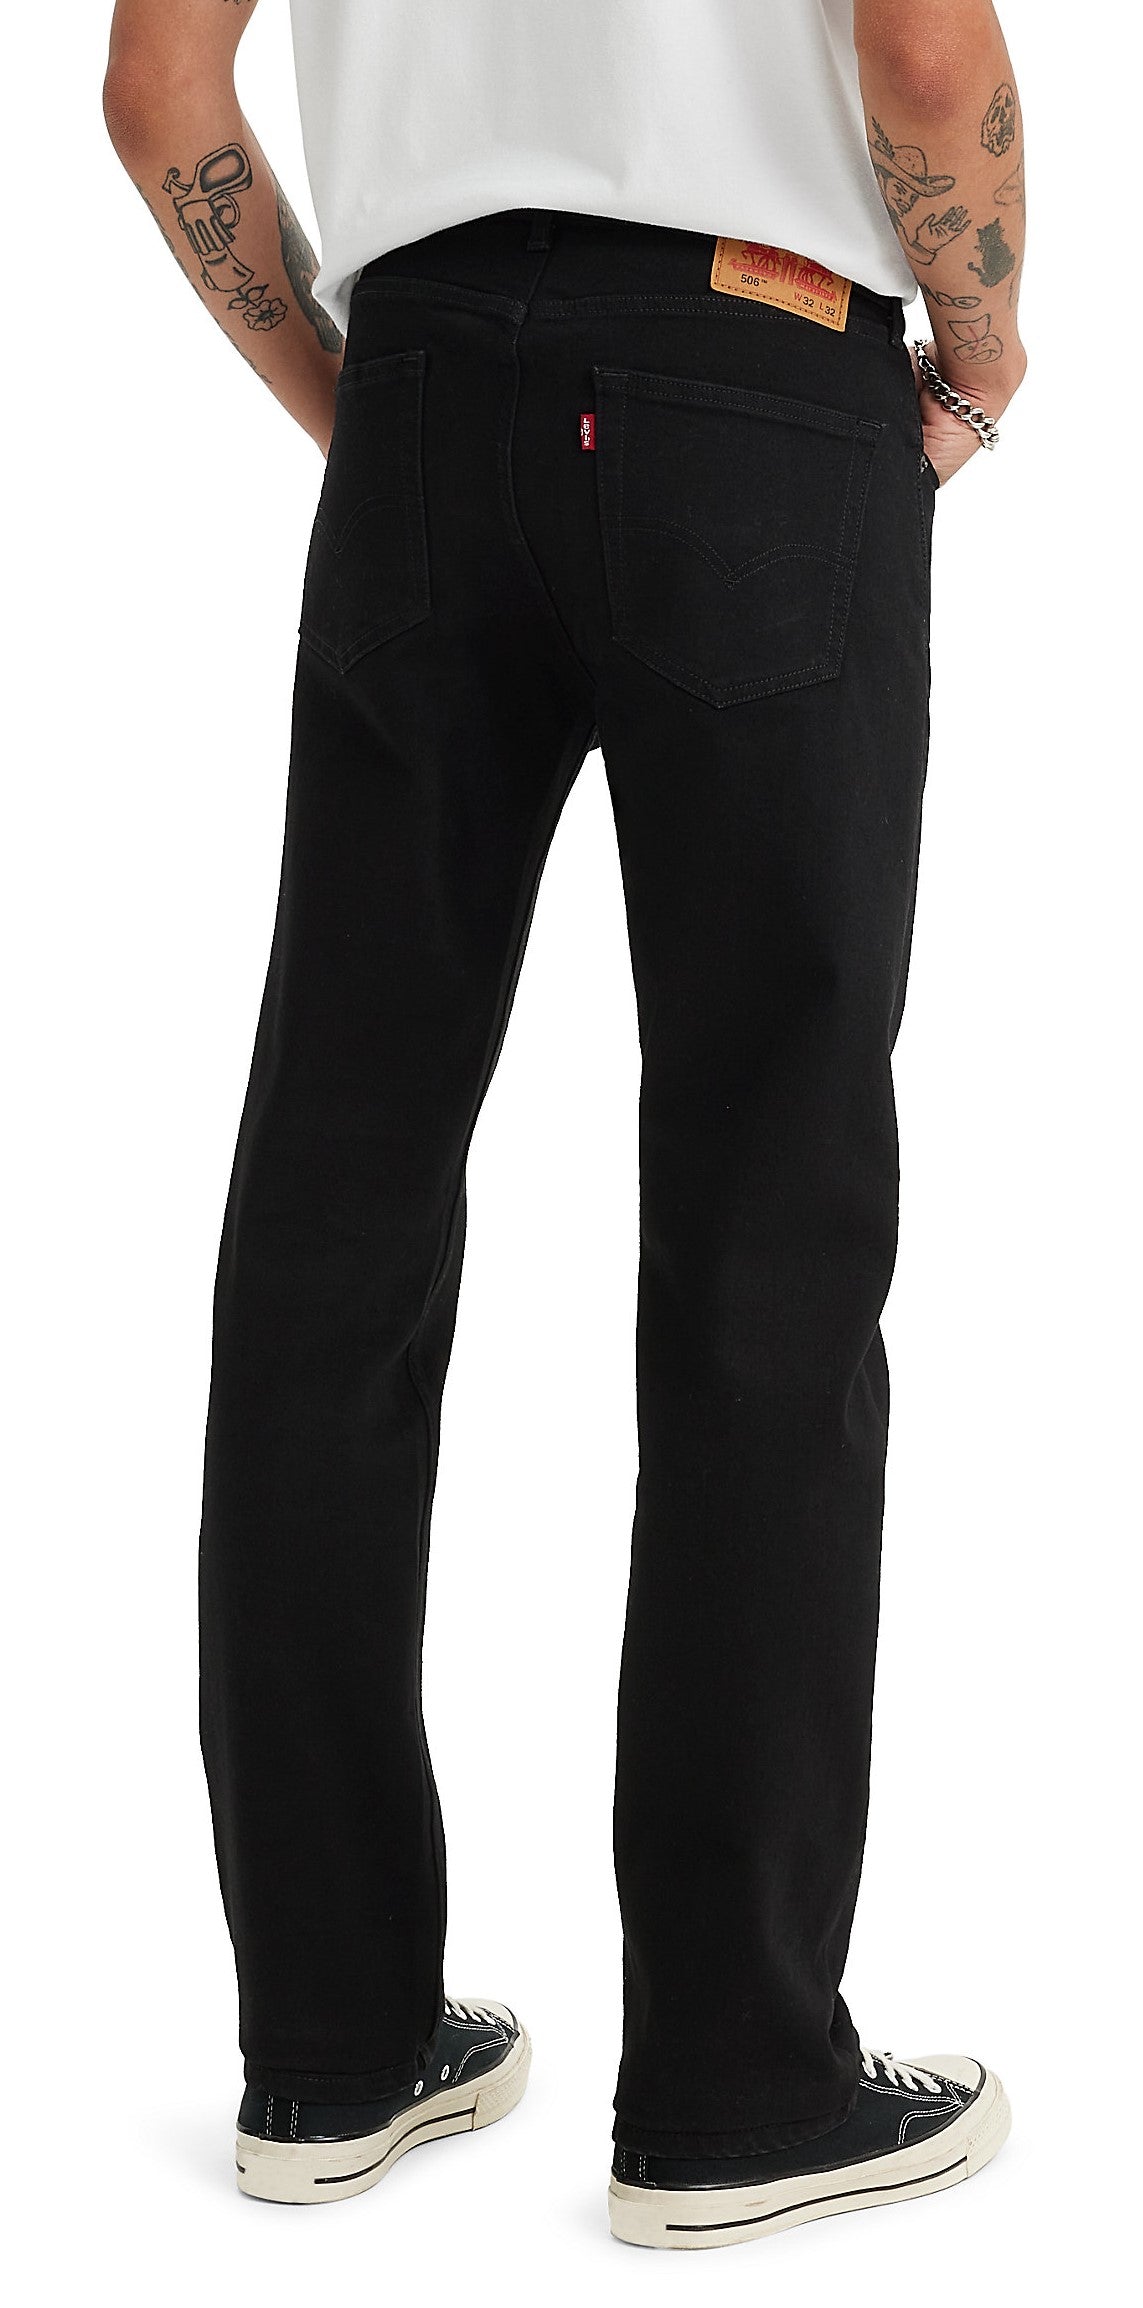 pantalones-jeans-levis-506-comfort-p-caballeros-1